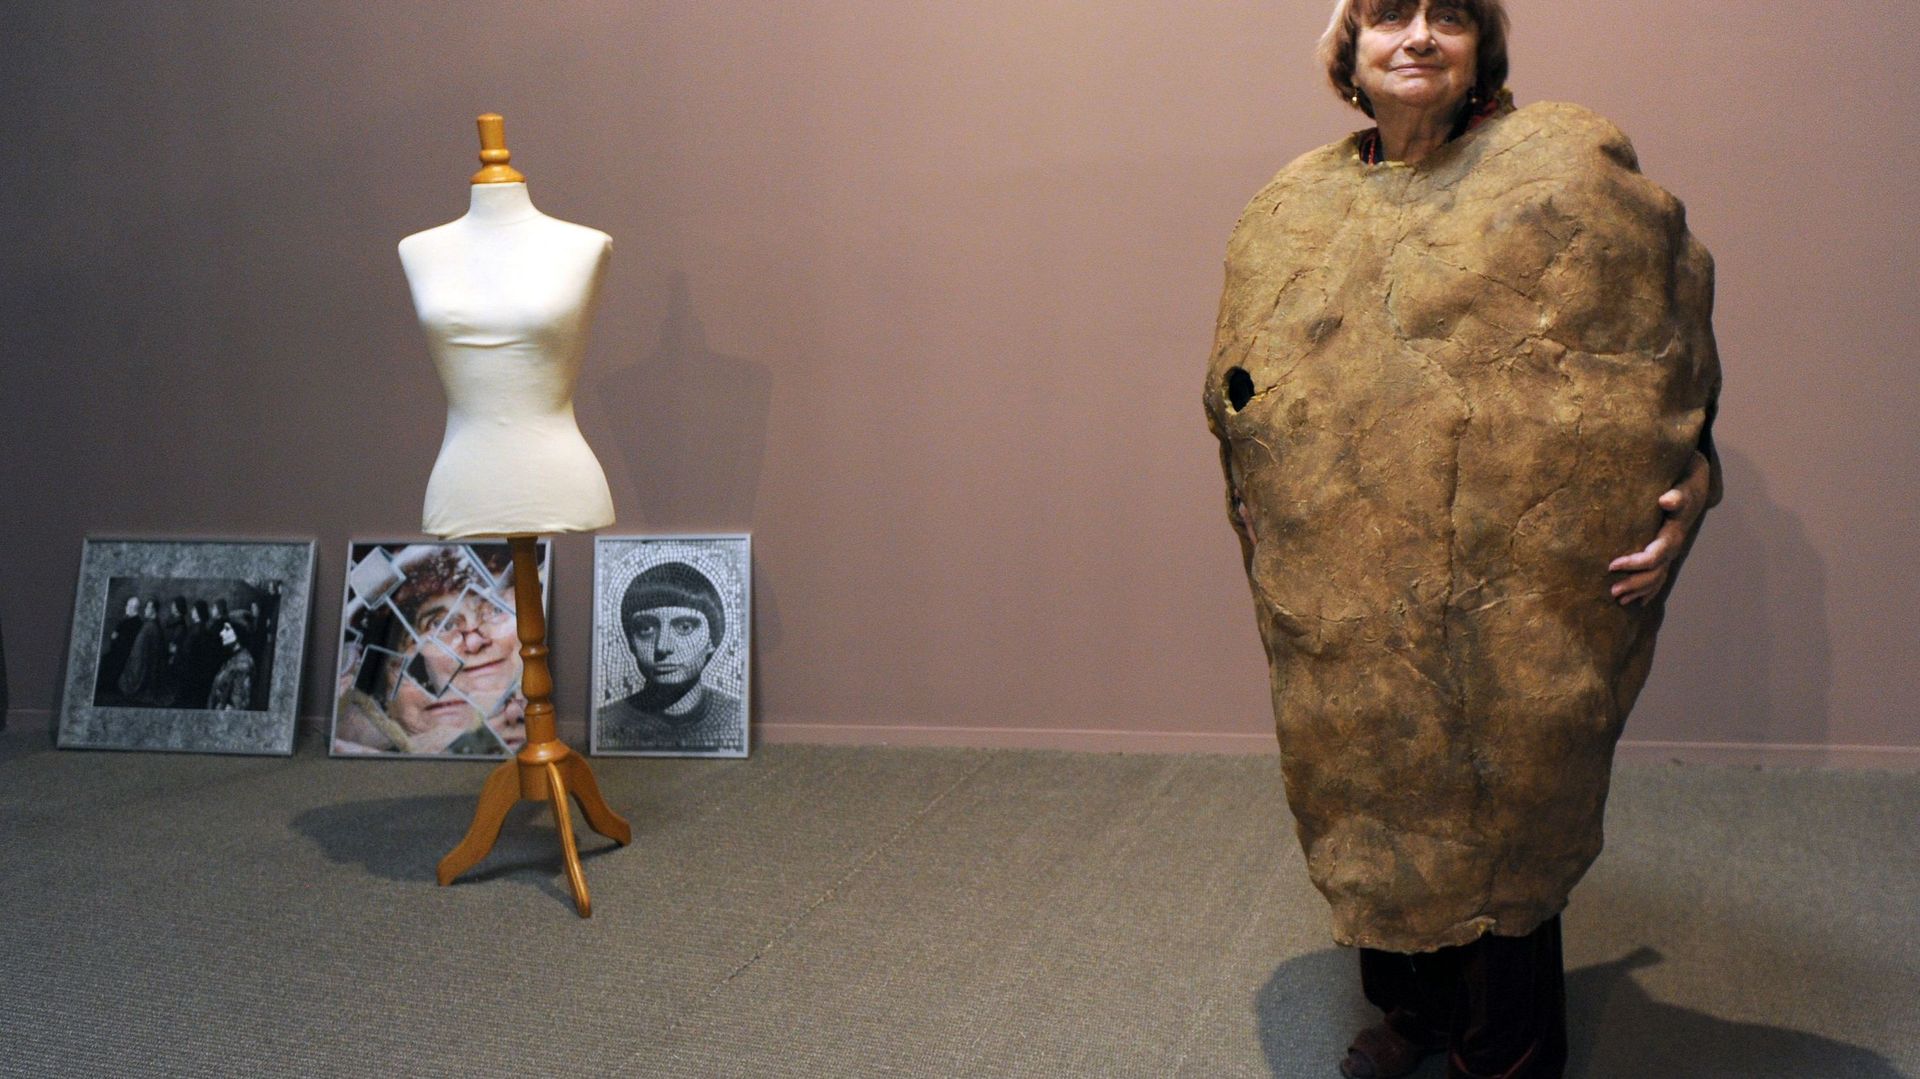 Elle n'hésitait pas à se mettre en scène, comme ici, avec son costume de "Femme patate" pour une exposition d'art contemporain (2011)